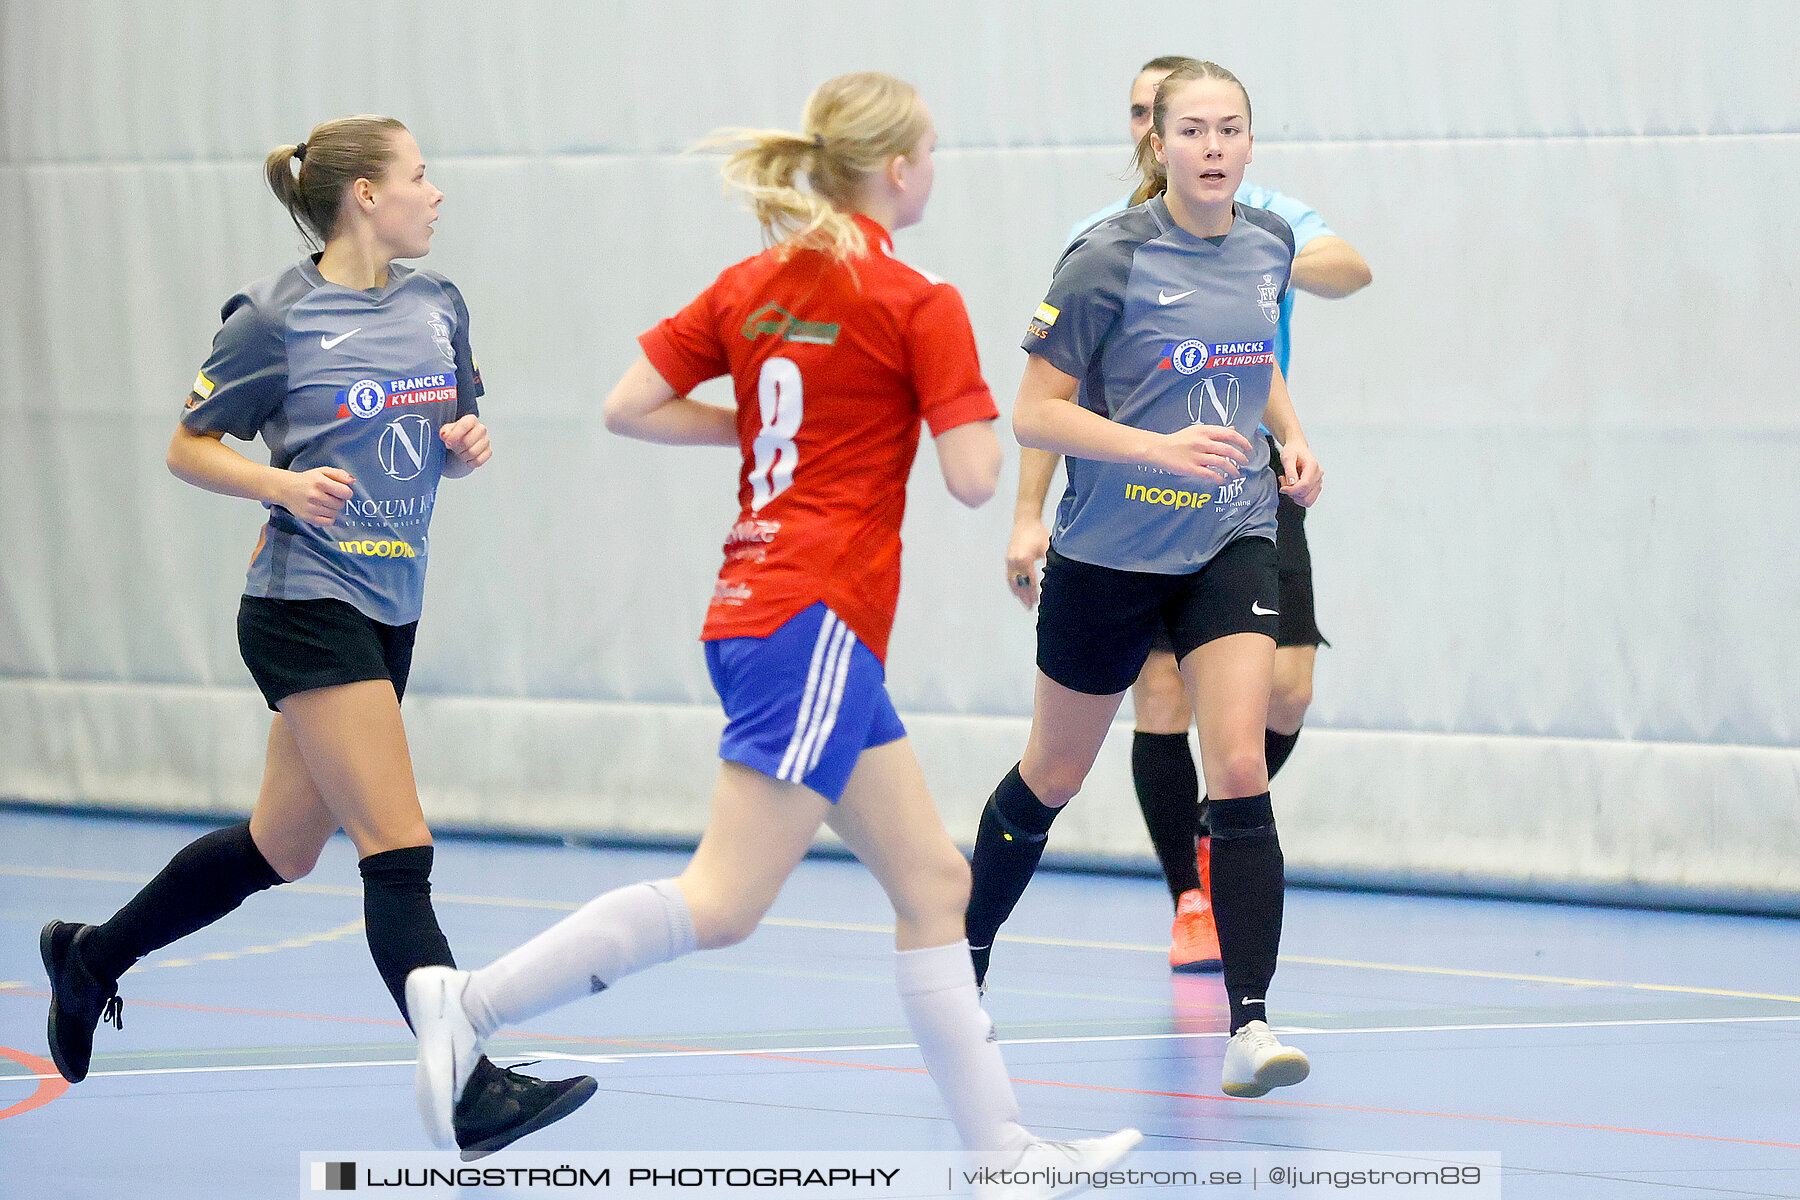 Skövde Futsalcup 2022 Damer Falköping Futsal Club-IFK Wreta Kloster 2 4-0,dam,Arena Skövde,Skövde,Sverige,Futsal,,2022,297573